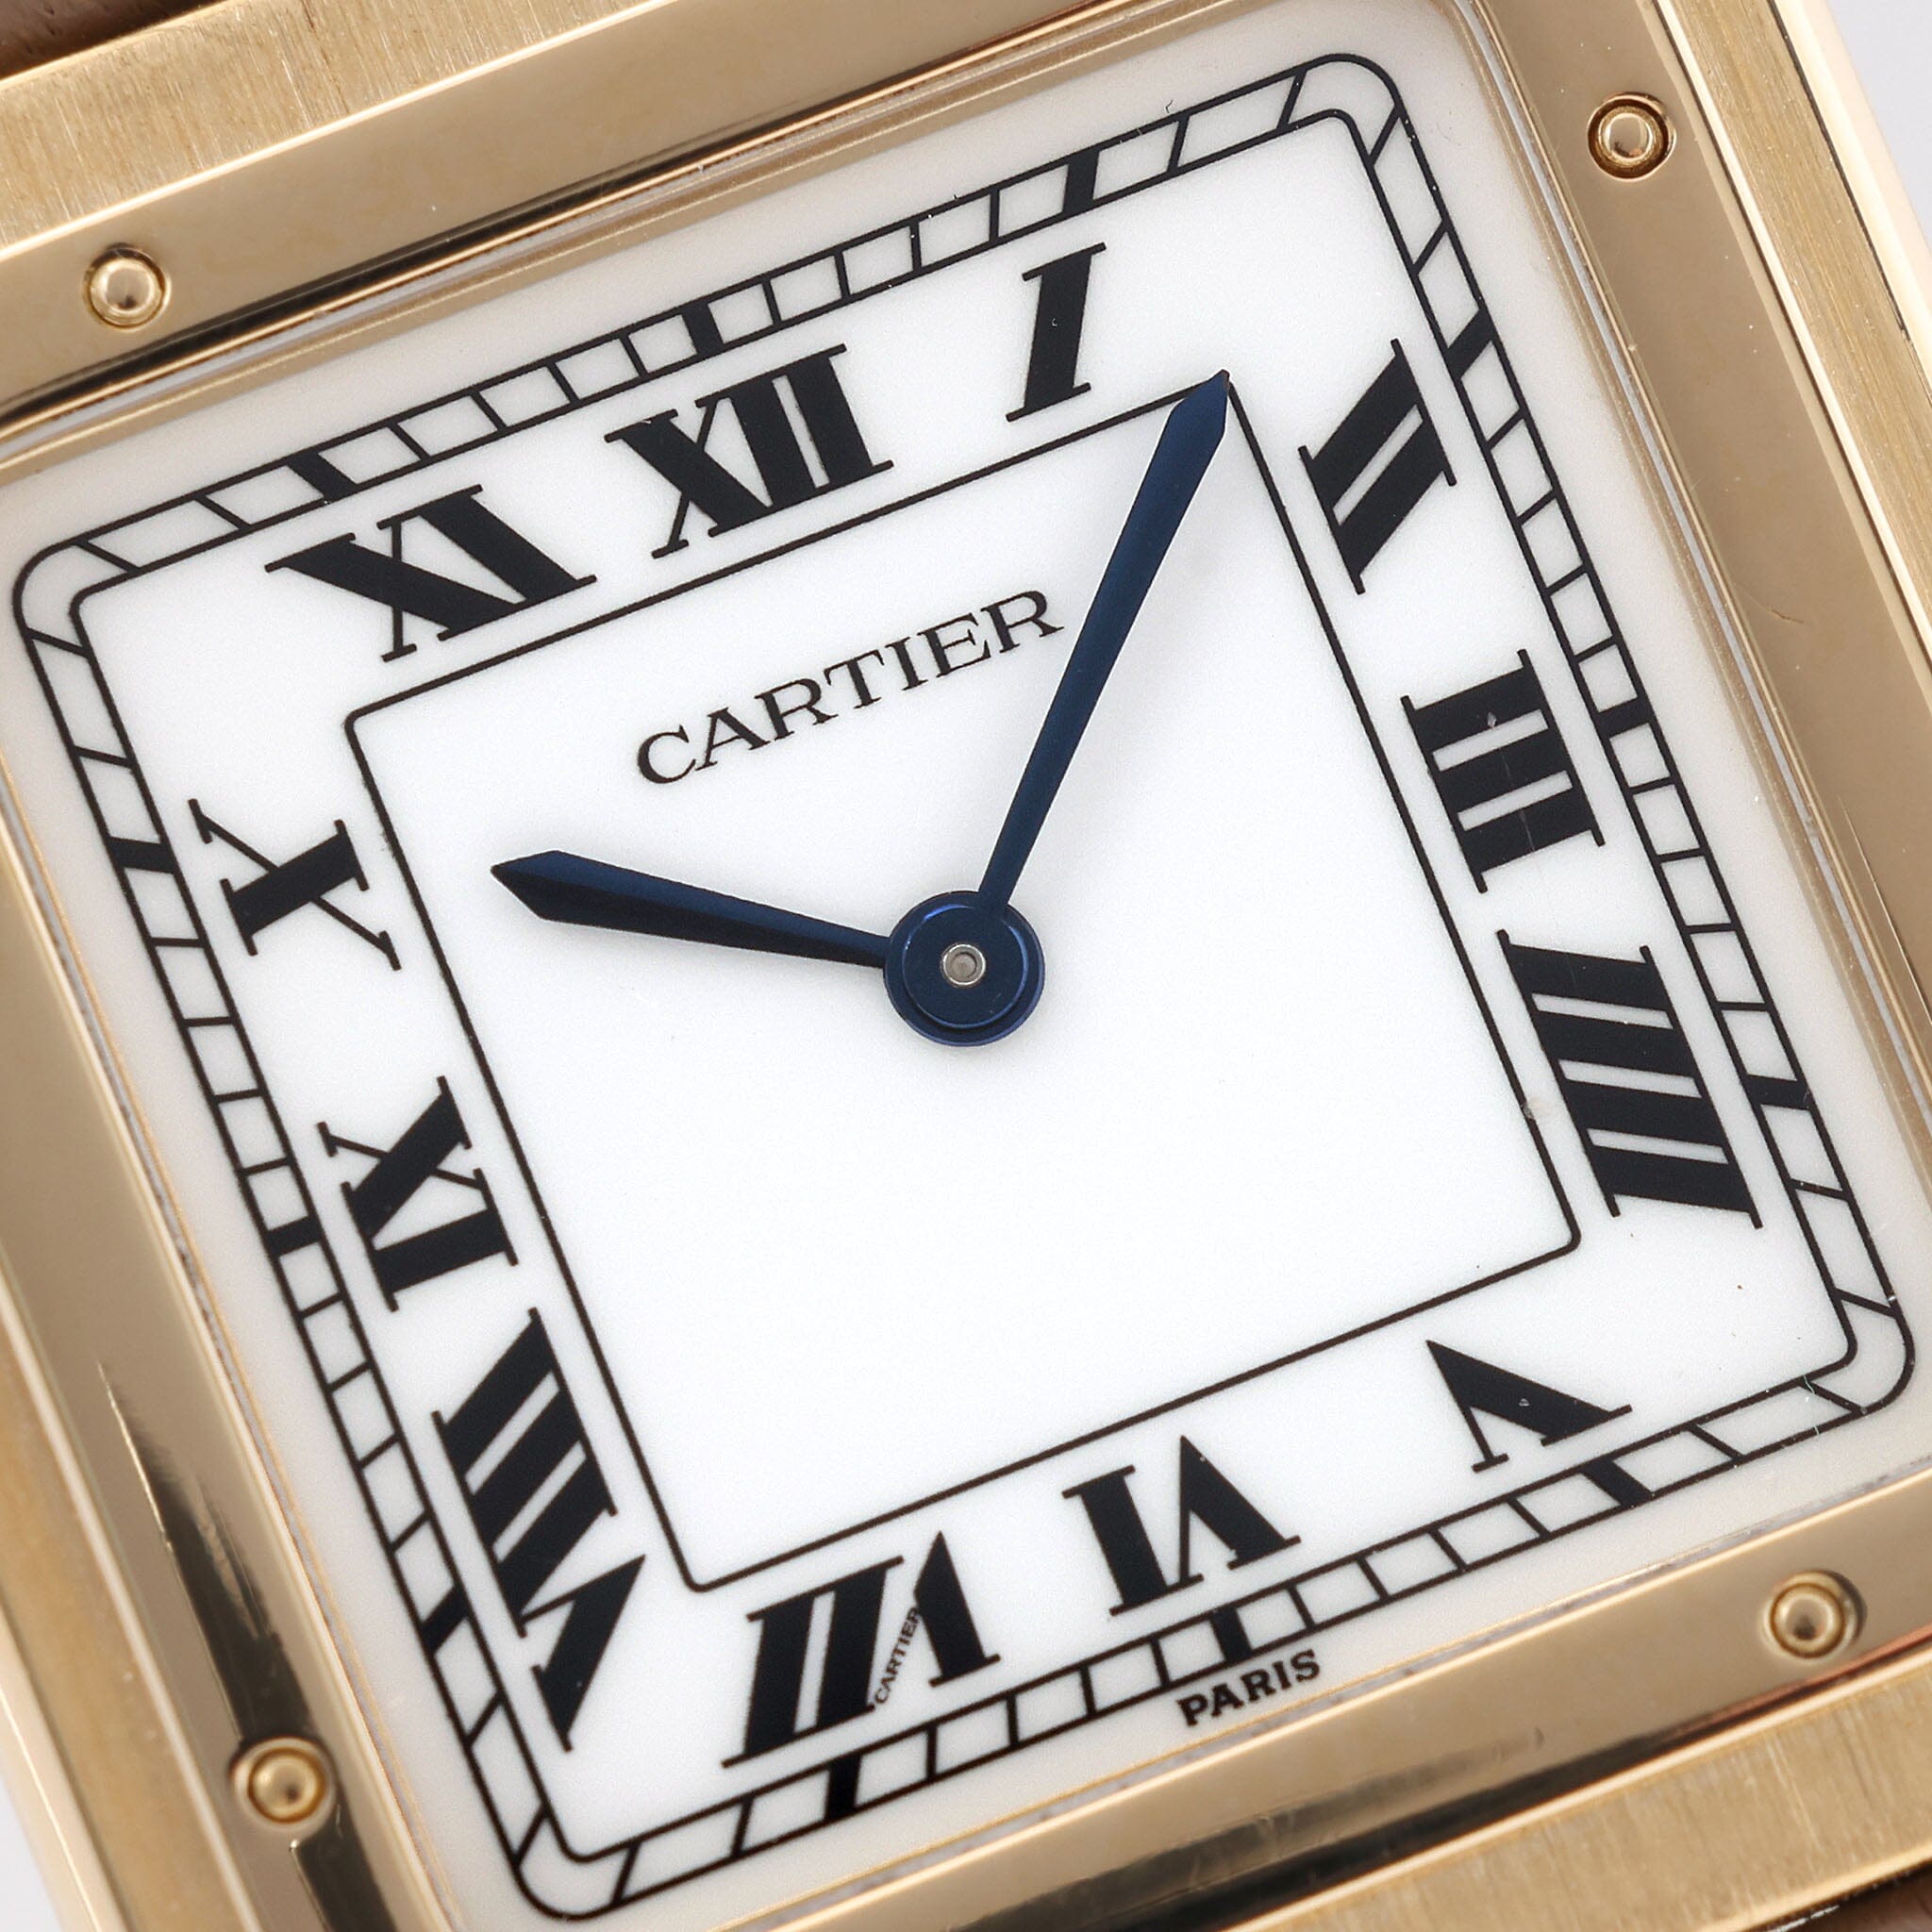 Cartier Paris Tank Louis 18kt Yellow Gold 'Extra Platte' ref 96019